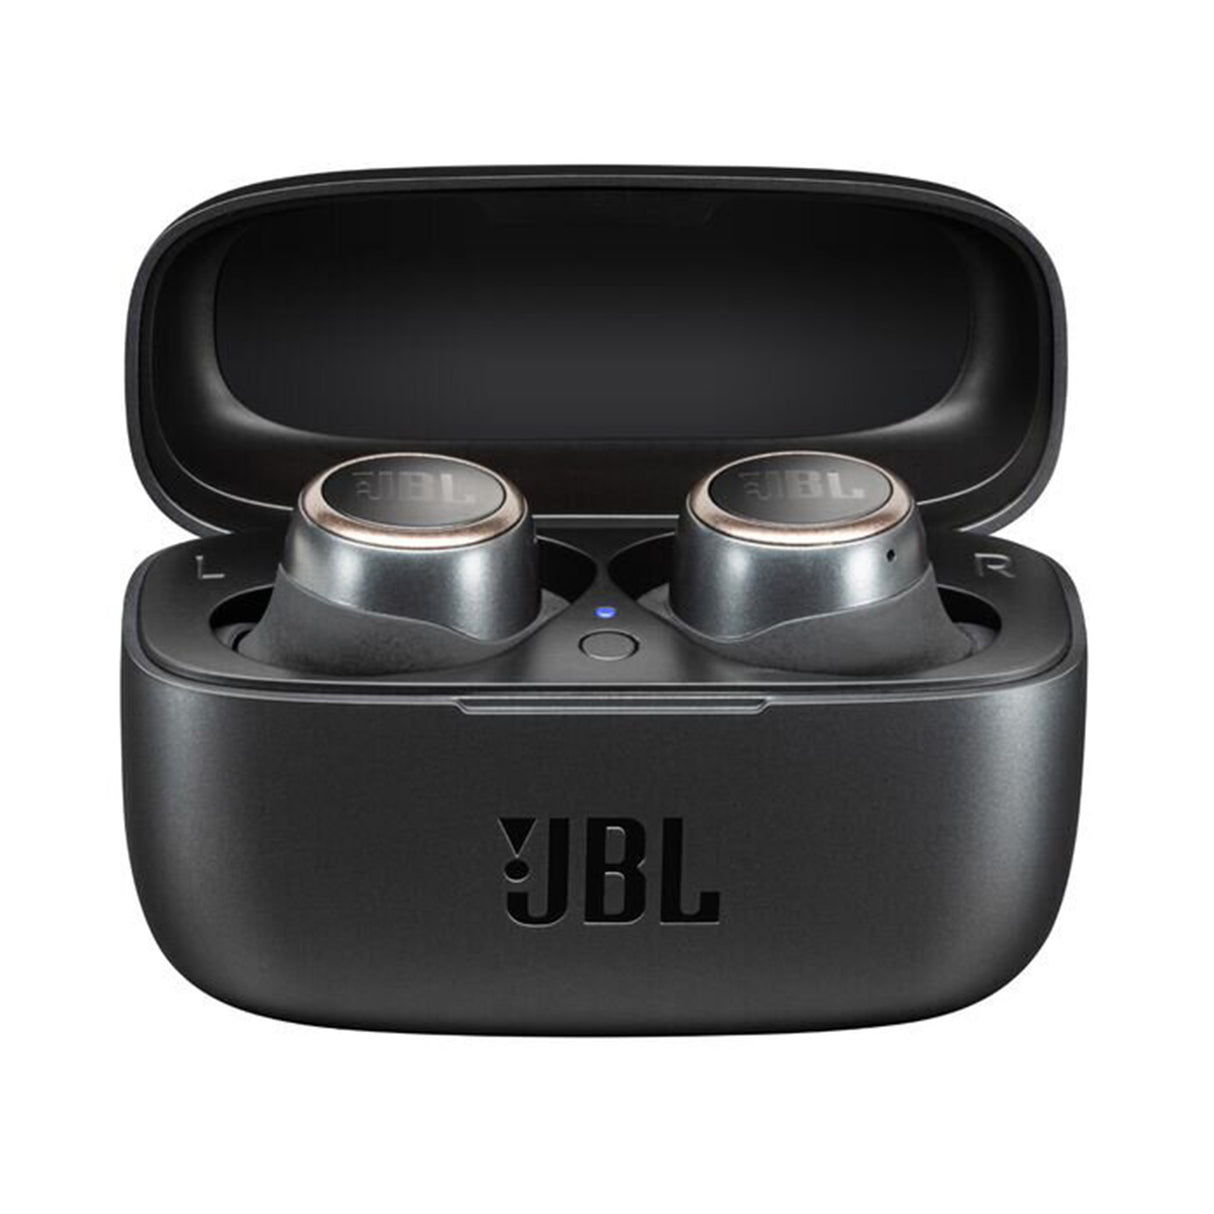 JBL LIVE 300TWS True Wireless In-Ear Earbuds